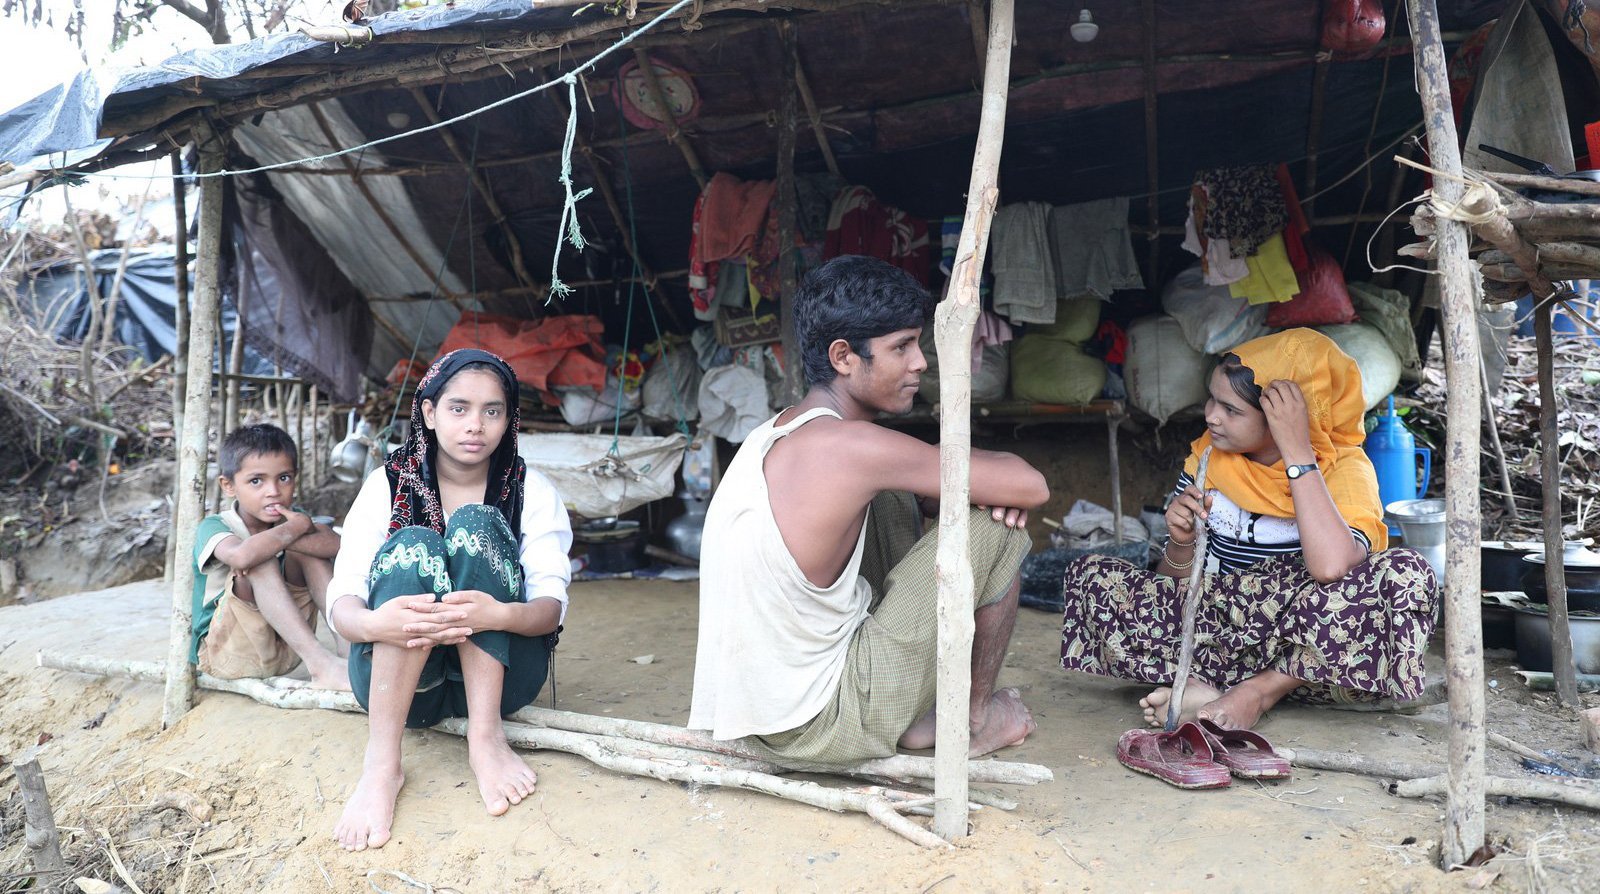 Dailystorm - Спецследователь ООН: Мьянма препятствует расследованию кризиса рохинья